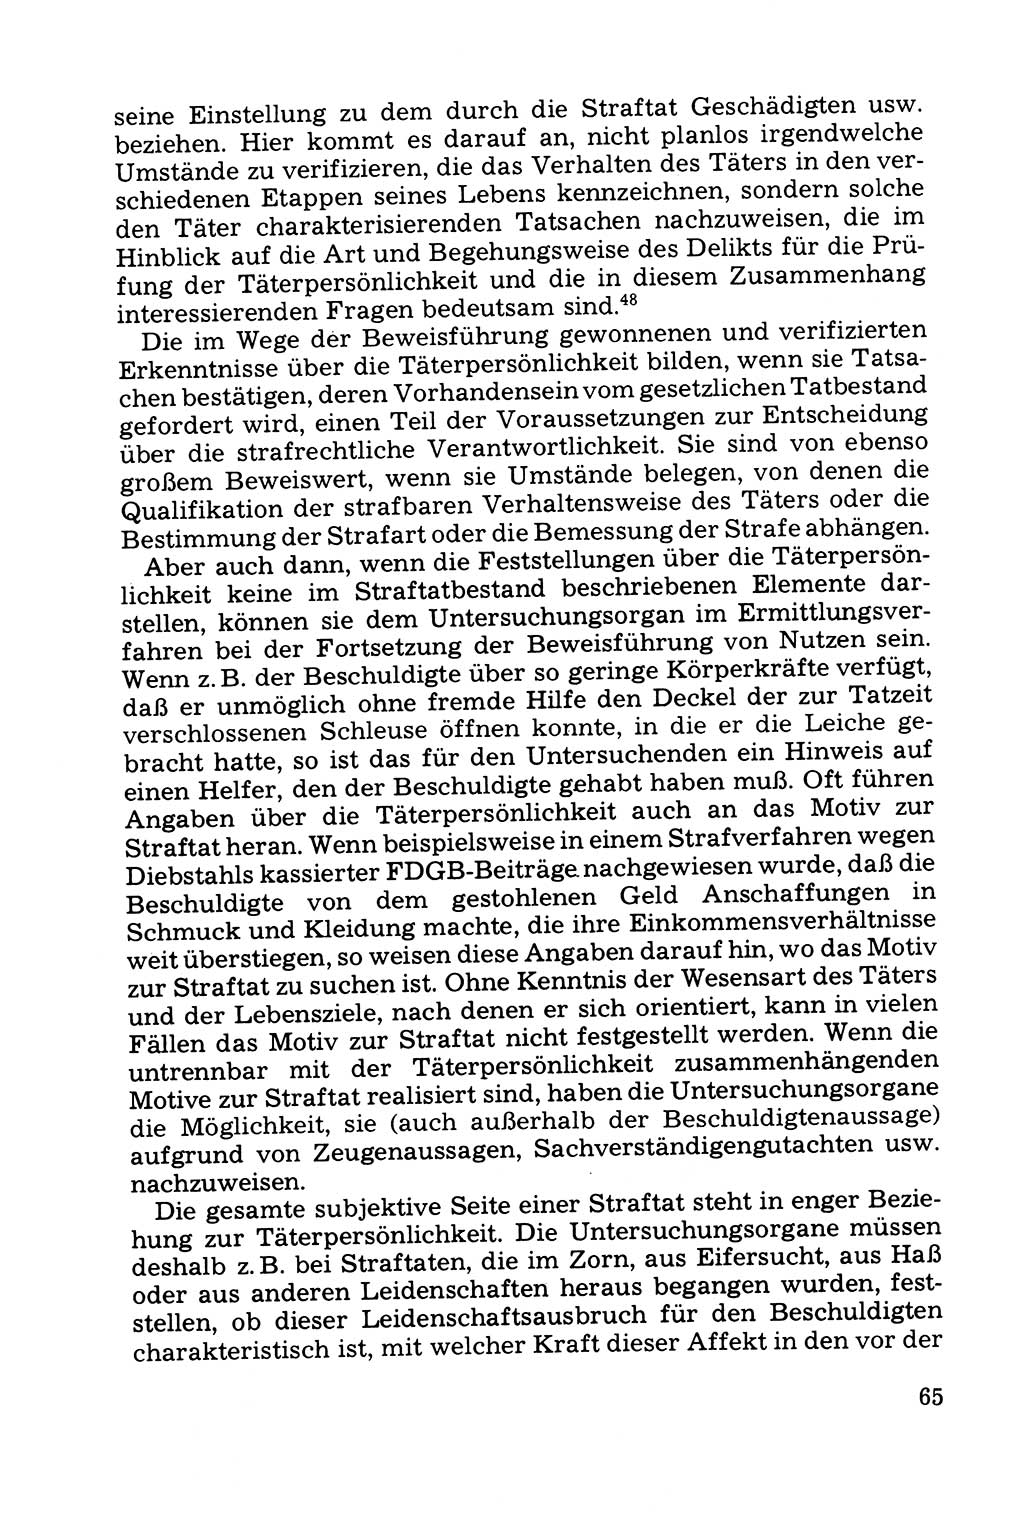 Grundfragen der Beweisführung im Ermittlungsverfahren [Deutsche Demokratische Republik (DDR)] 1980, Seite 65 (Bws.-Fhrg. EV DDR 1980, S. 65)